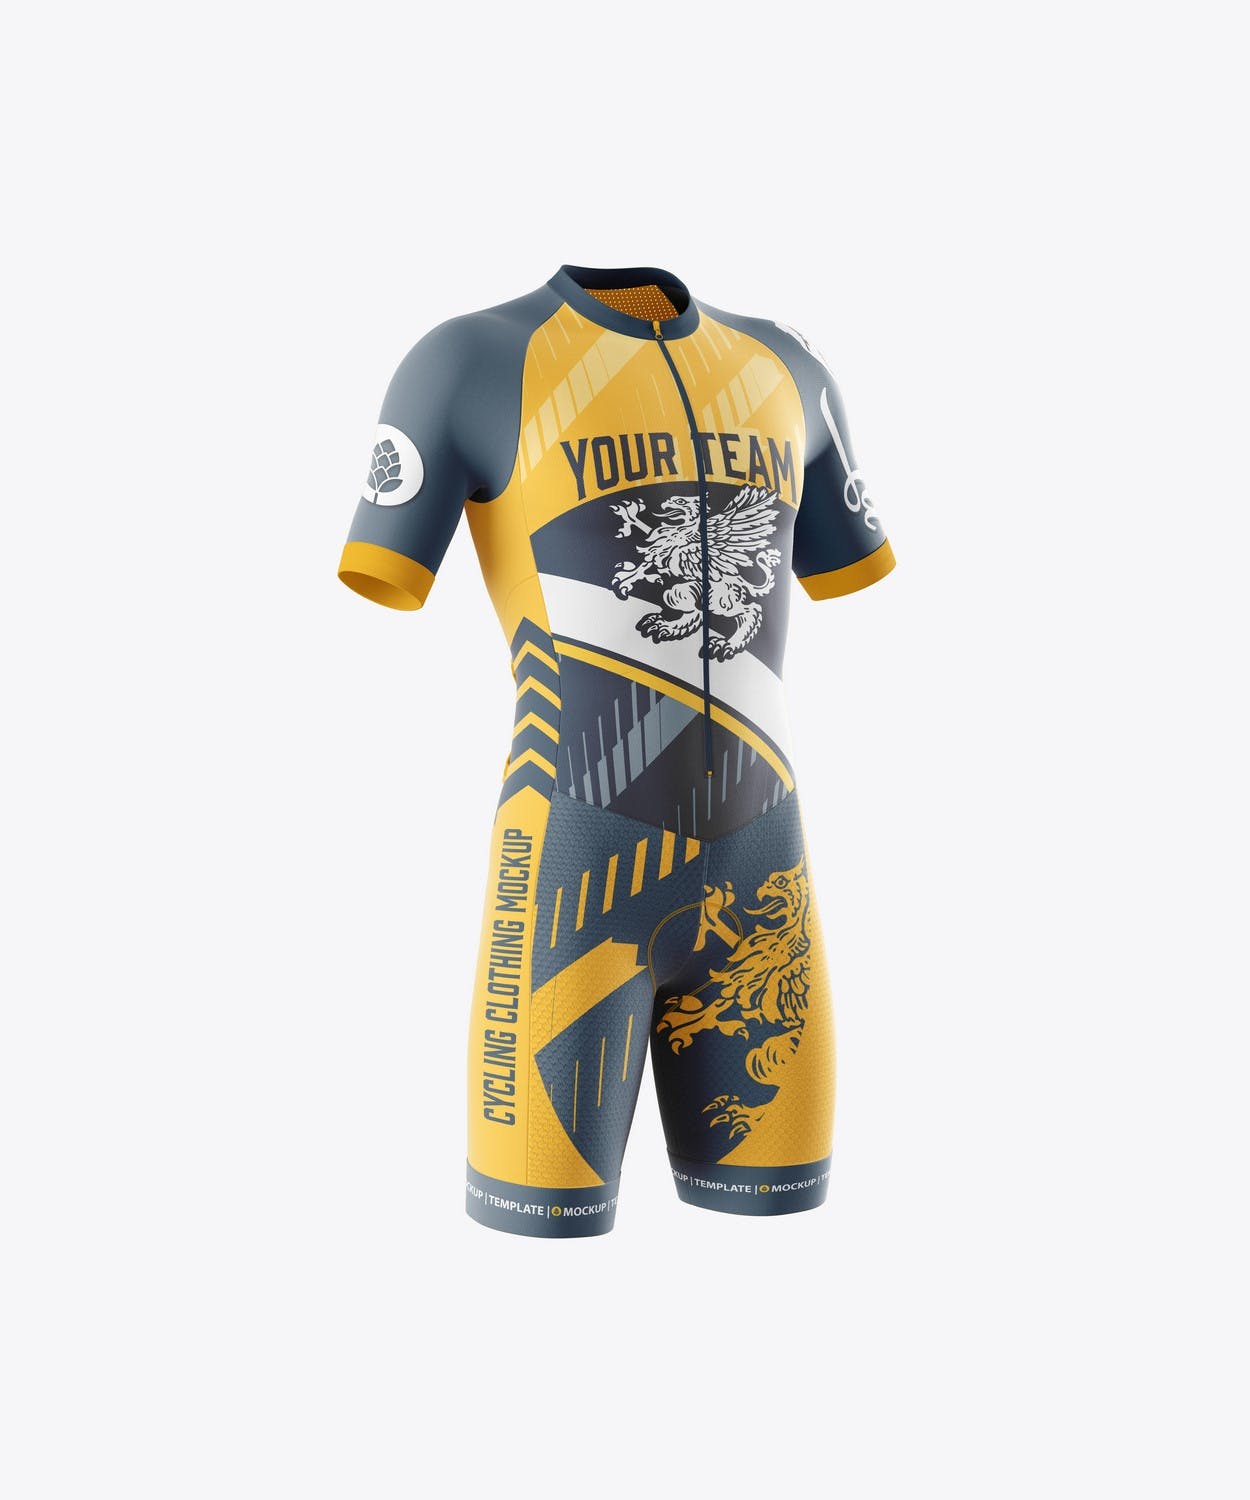 男子运动套装自行车服装品牌设计样机 Sport Cycling Suit for Men Mockup 样机素材 第7张